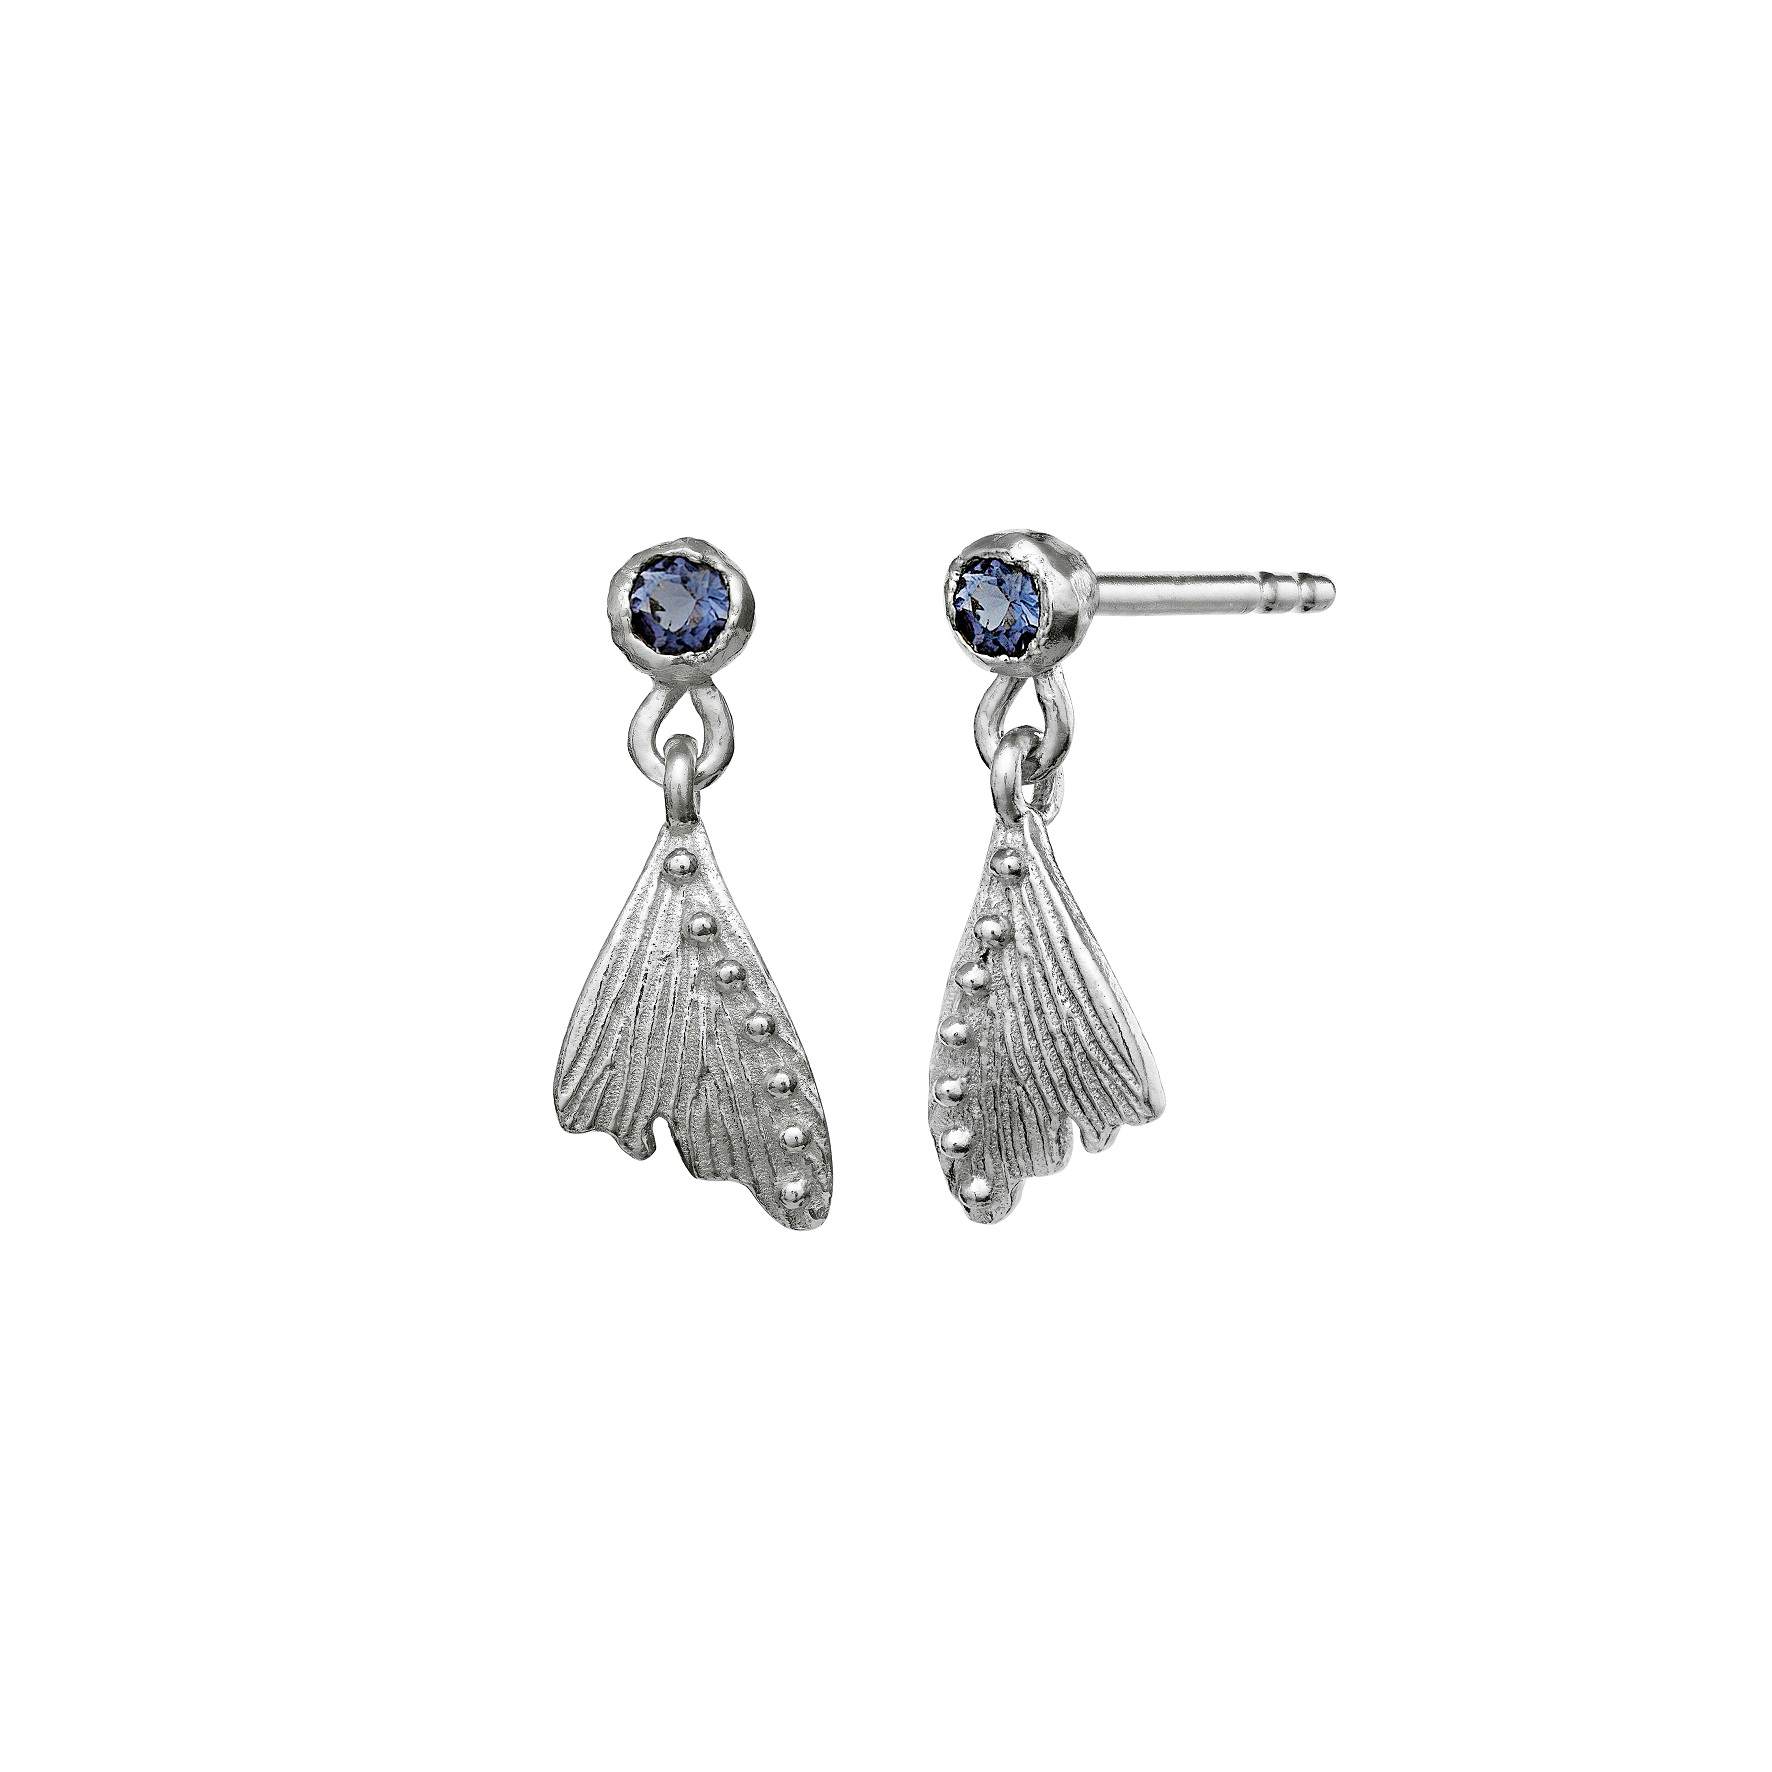 Lenora Earrings from Maanesten in Silver Sterling 925